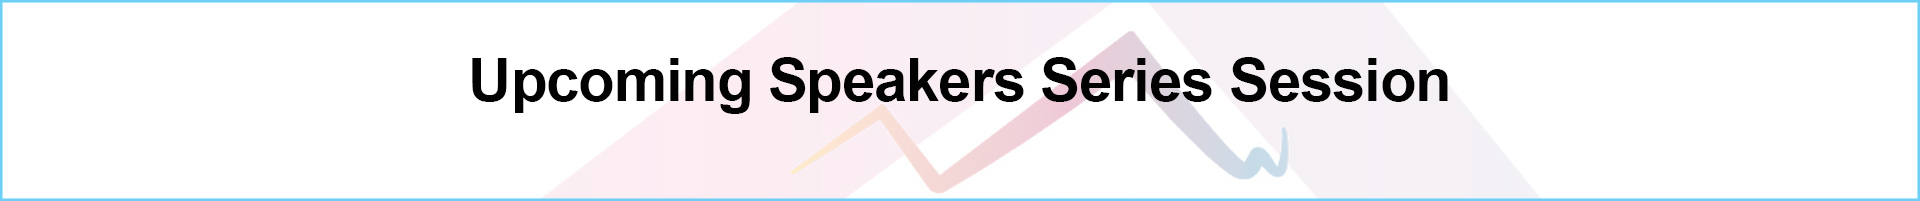 upcoming speaker series.jpg